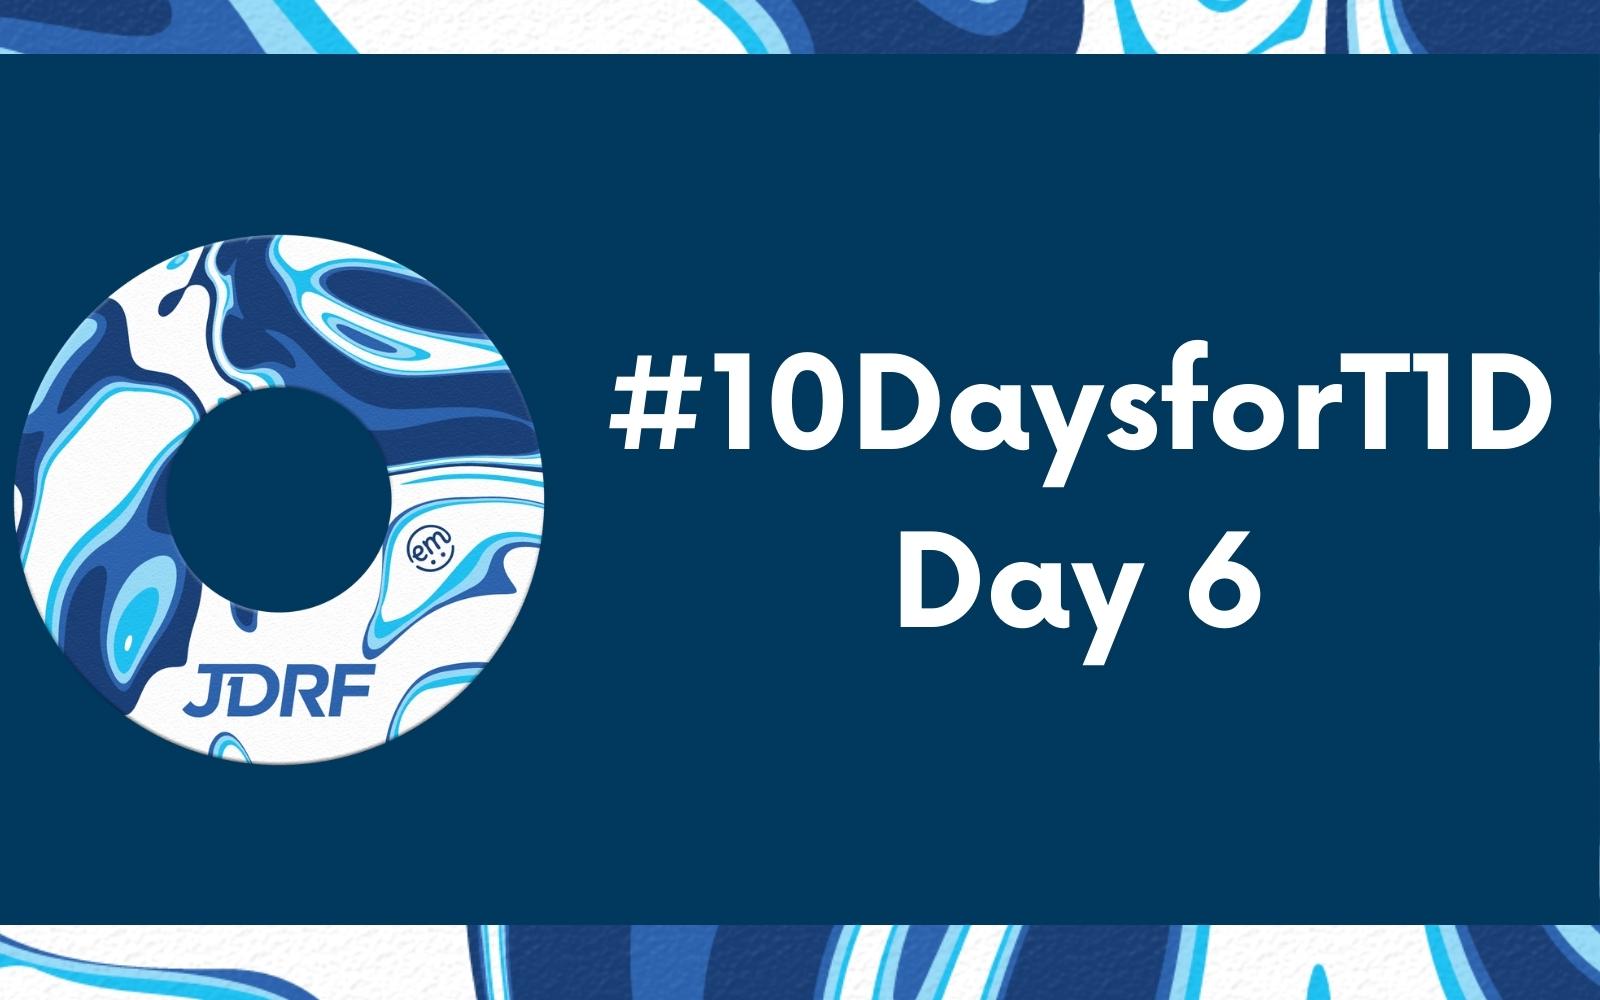 #10DaysforT1D Challenge Day 6